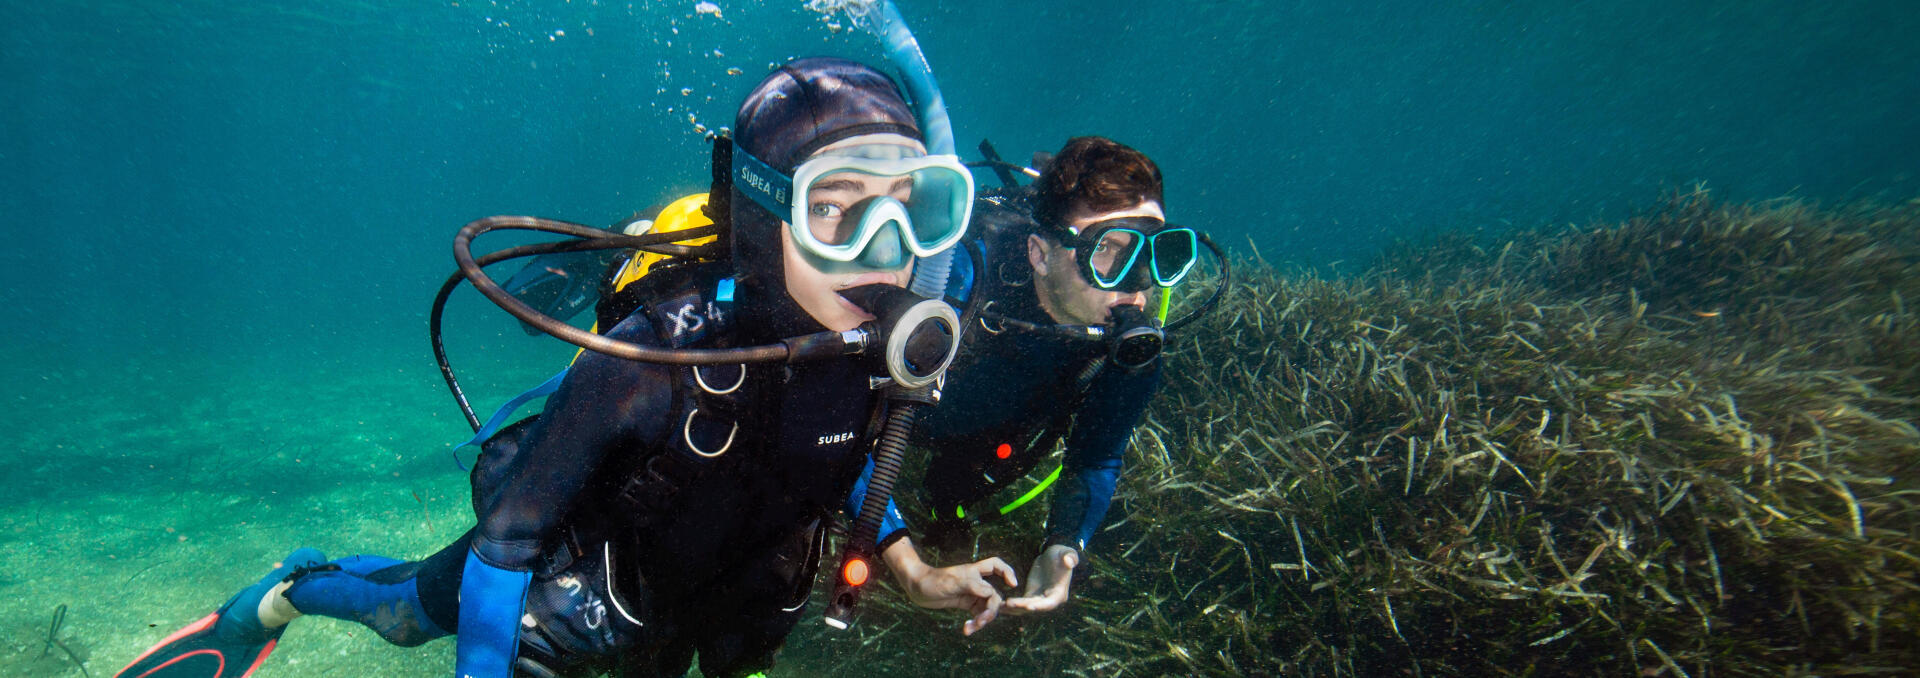 conseil pour passer du snorkeling vers la plongée sous marine subea